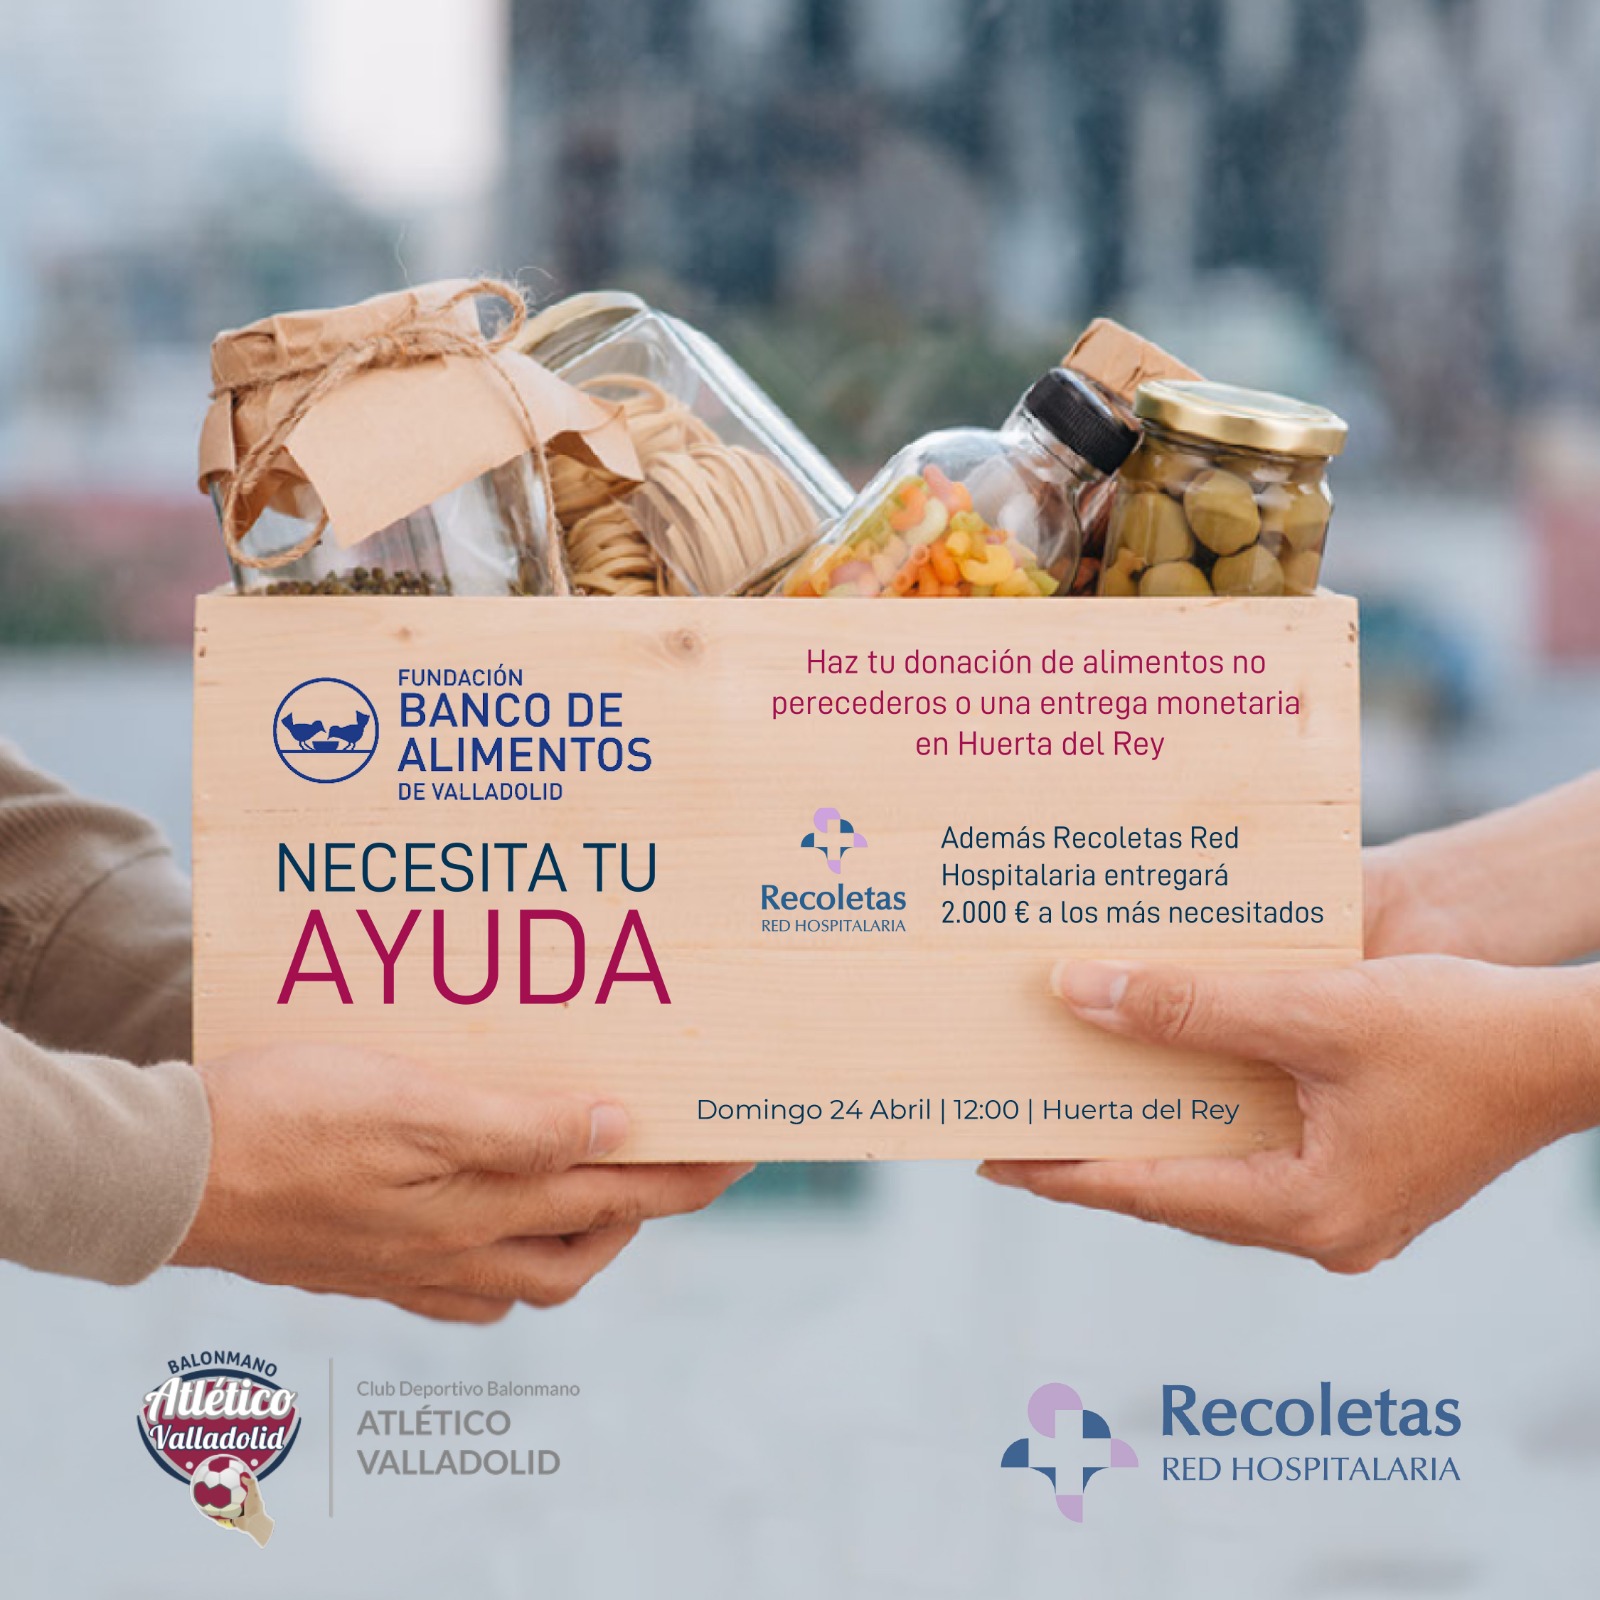 Recogida solidaria de alimentos en colaboración con Recoletas Red Hospitalaria y Fundación Banco de Alimentos